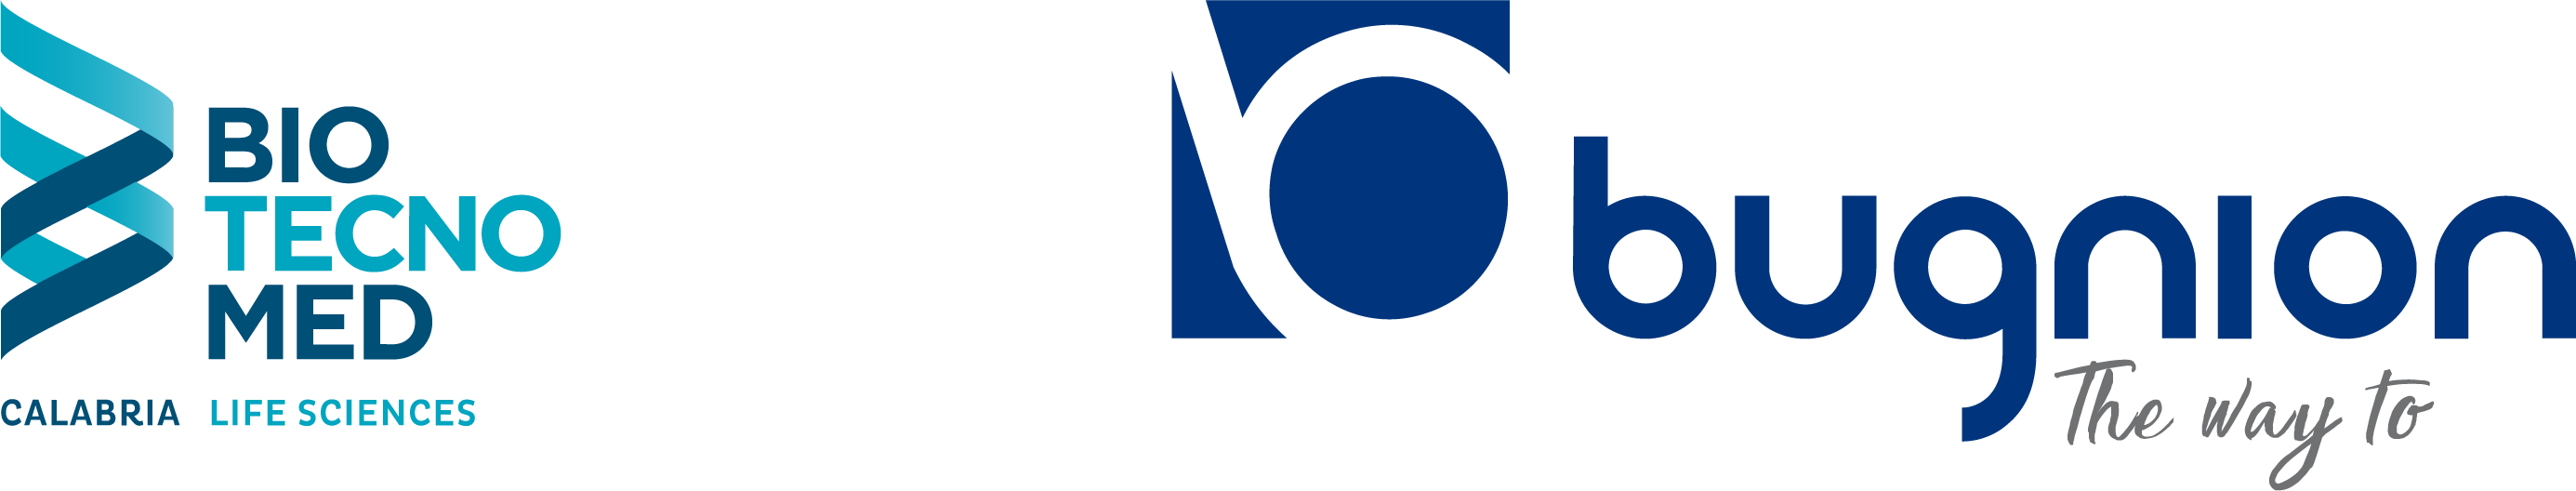 Logo Biotecnomed